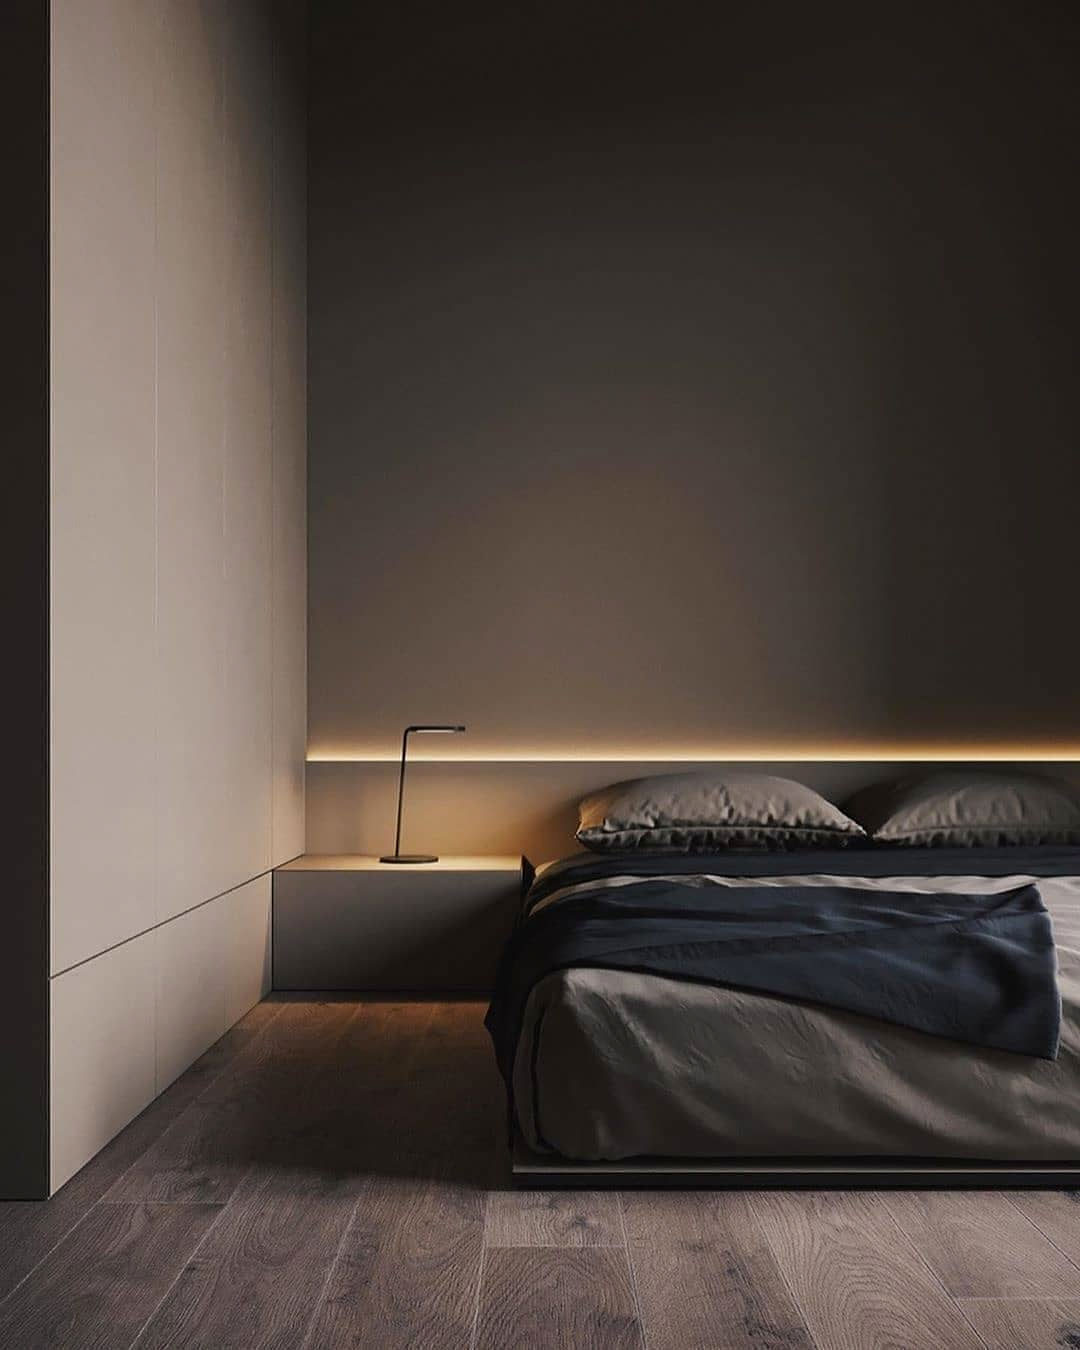 dam Schaken Tenen 15x Moderne slaapkamer ideeën – Slaapkamer ideeën